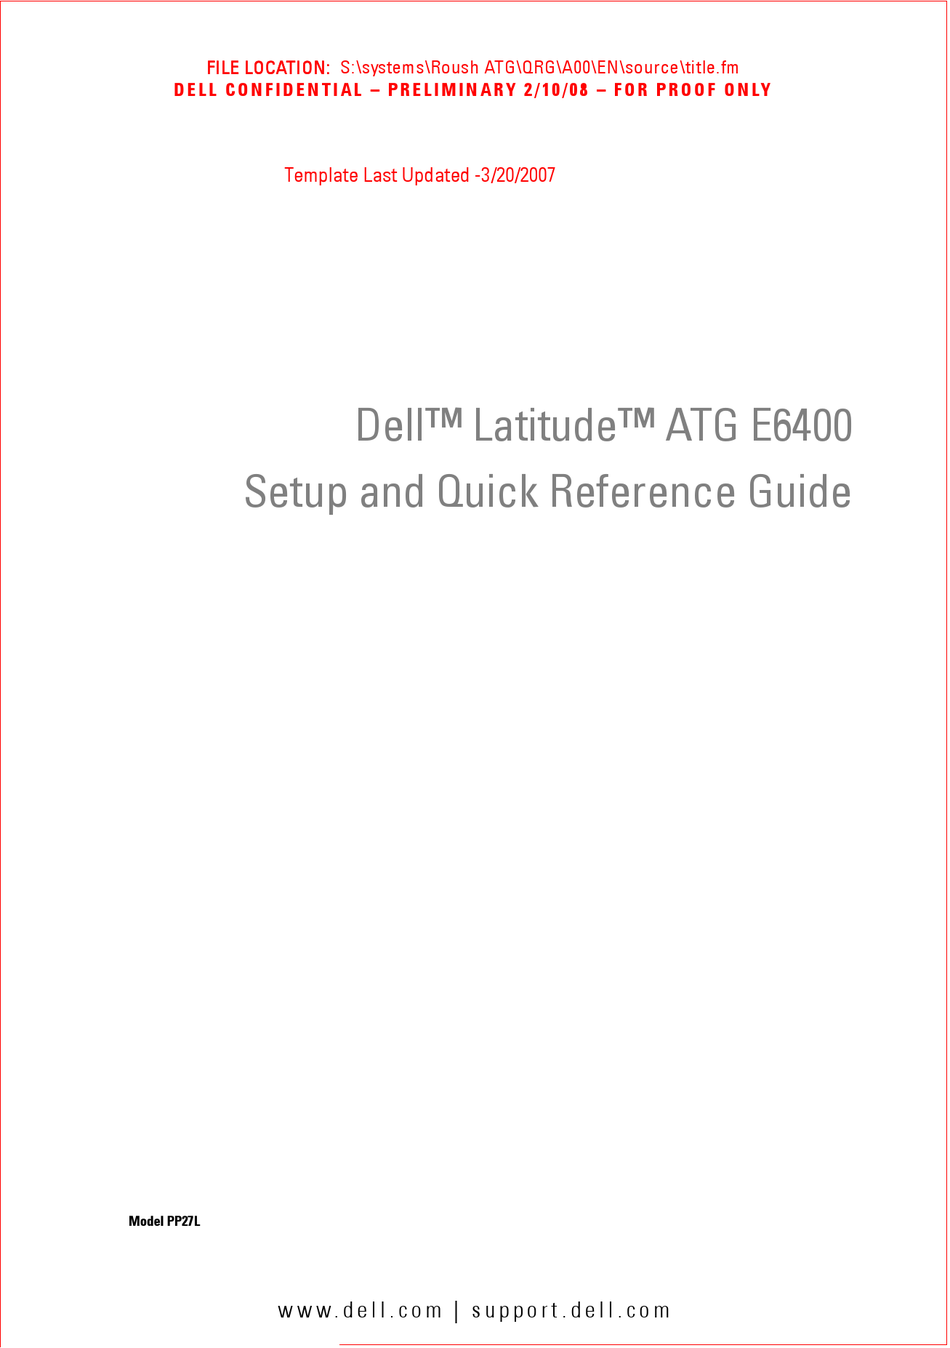 reinstall video driver for dell latitude e6400